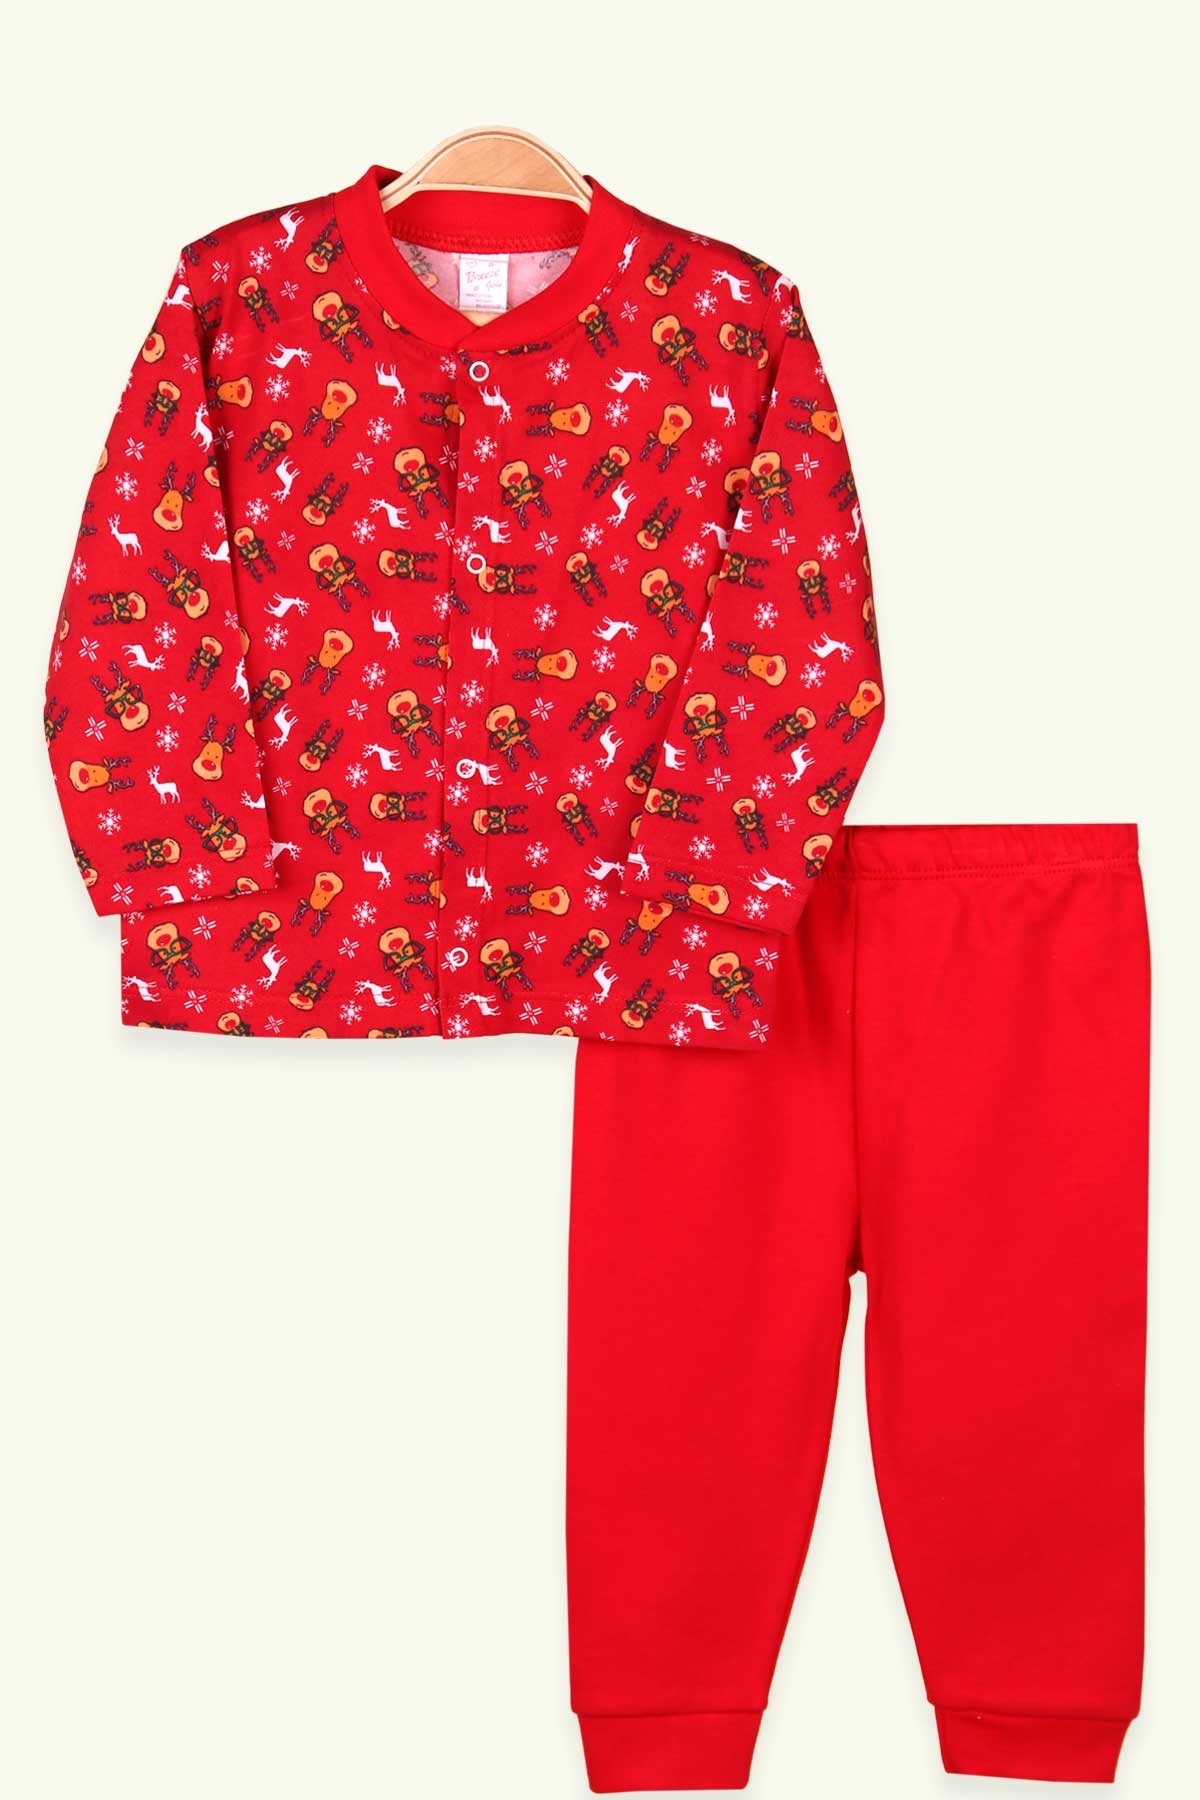 Kız Bebek Pijama Takımı Yılbaşı Temalı Kırmızı (0-3 Ay-9 Ay) - BREEZE